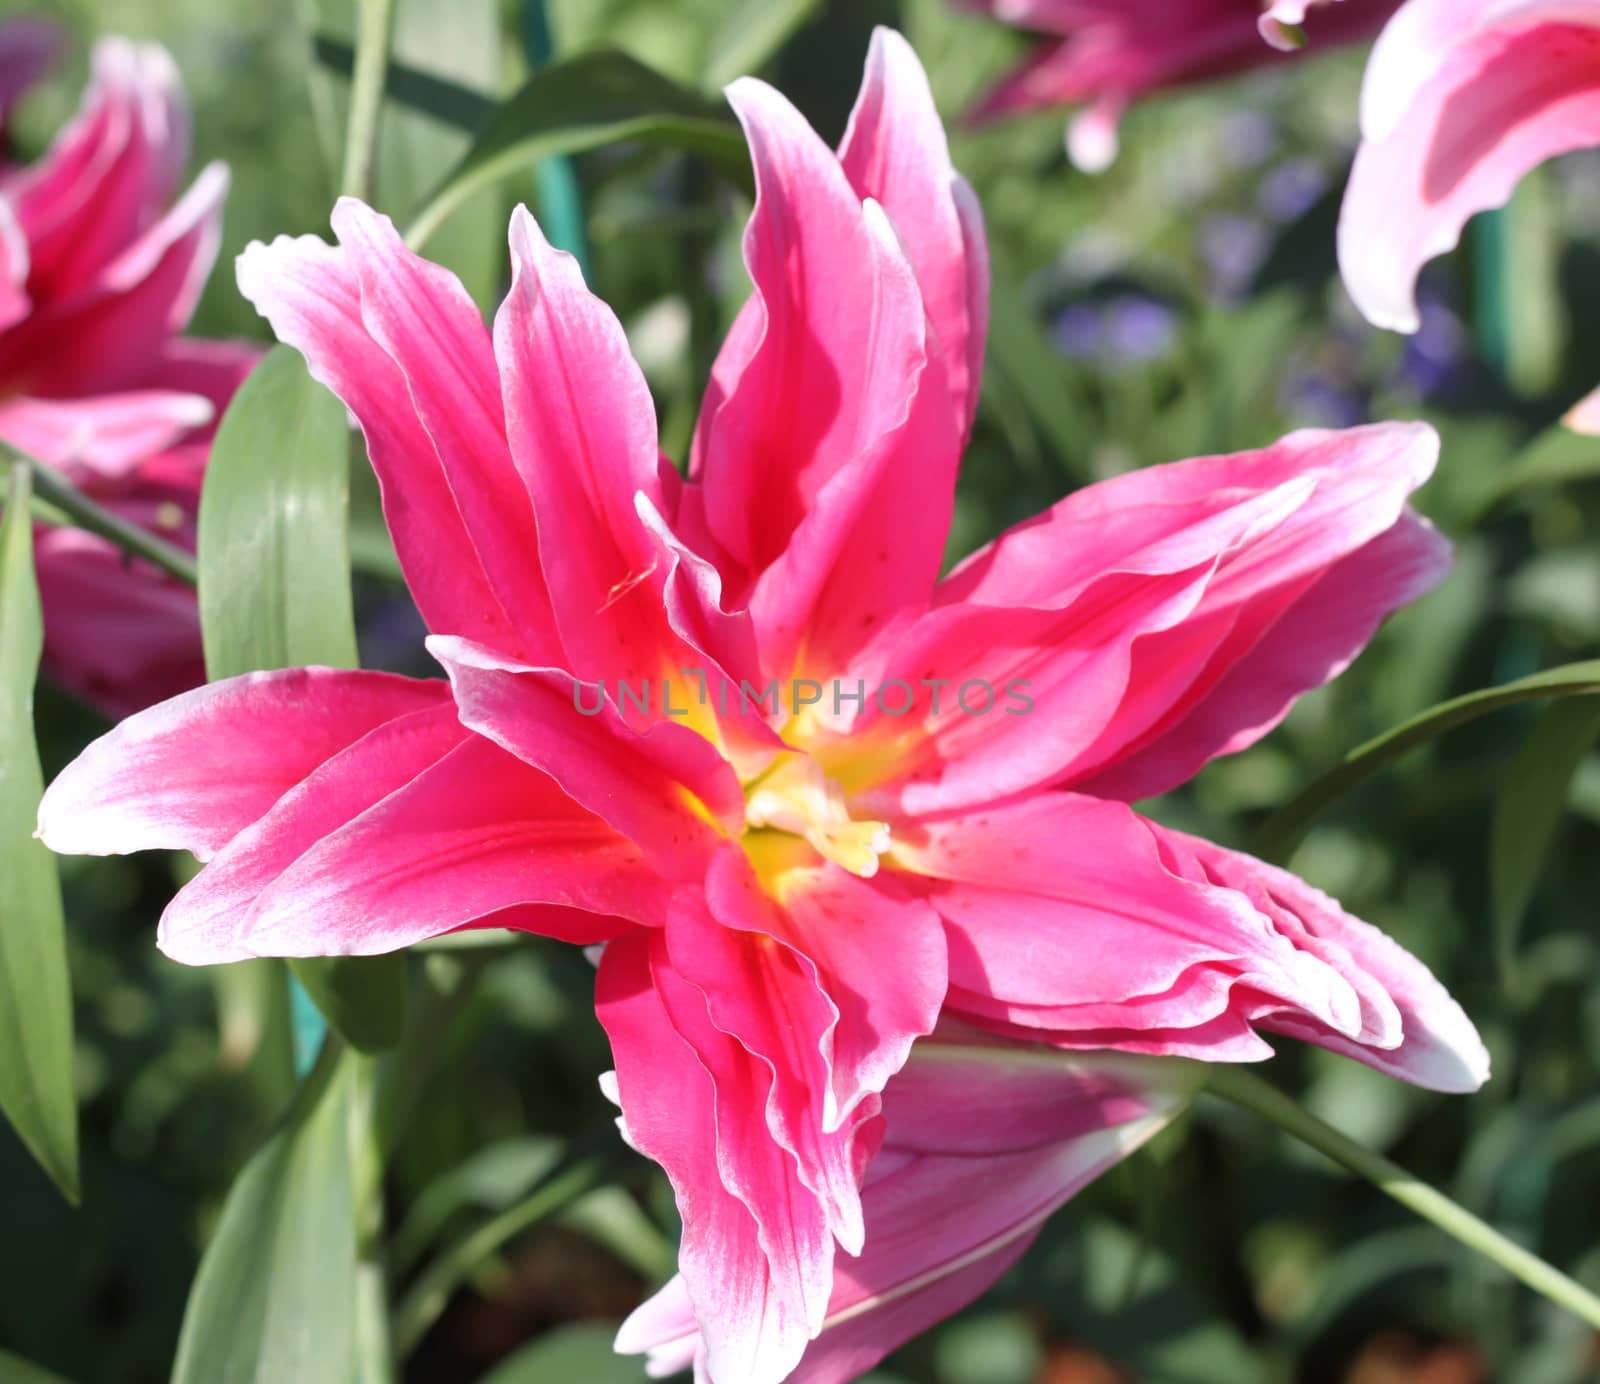 Pink lilies flower by primzrider